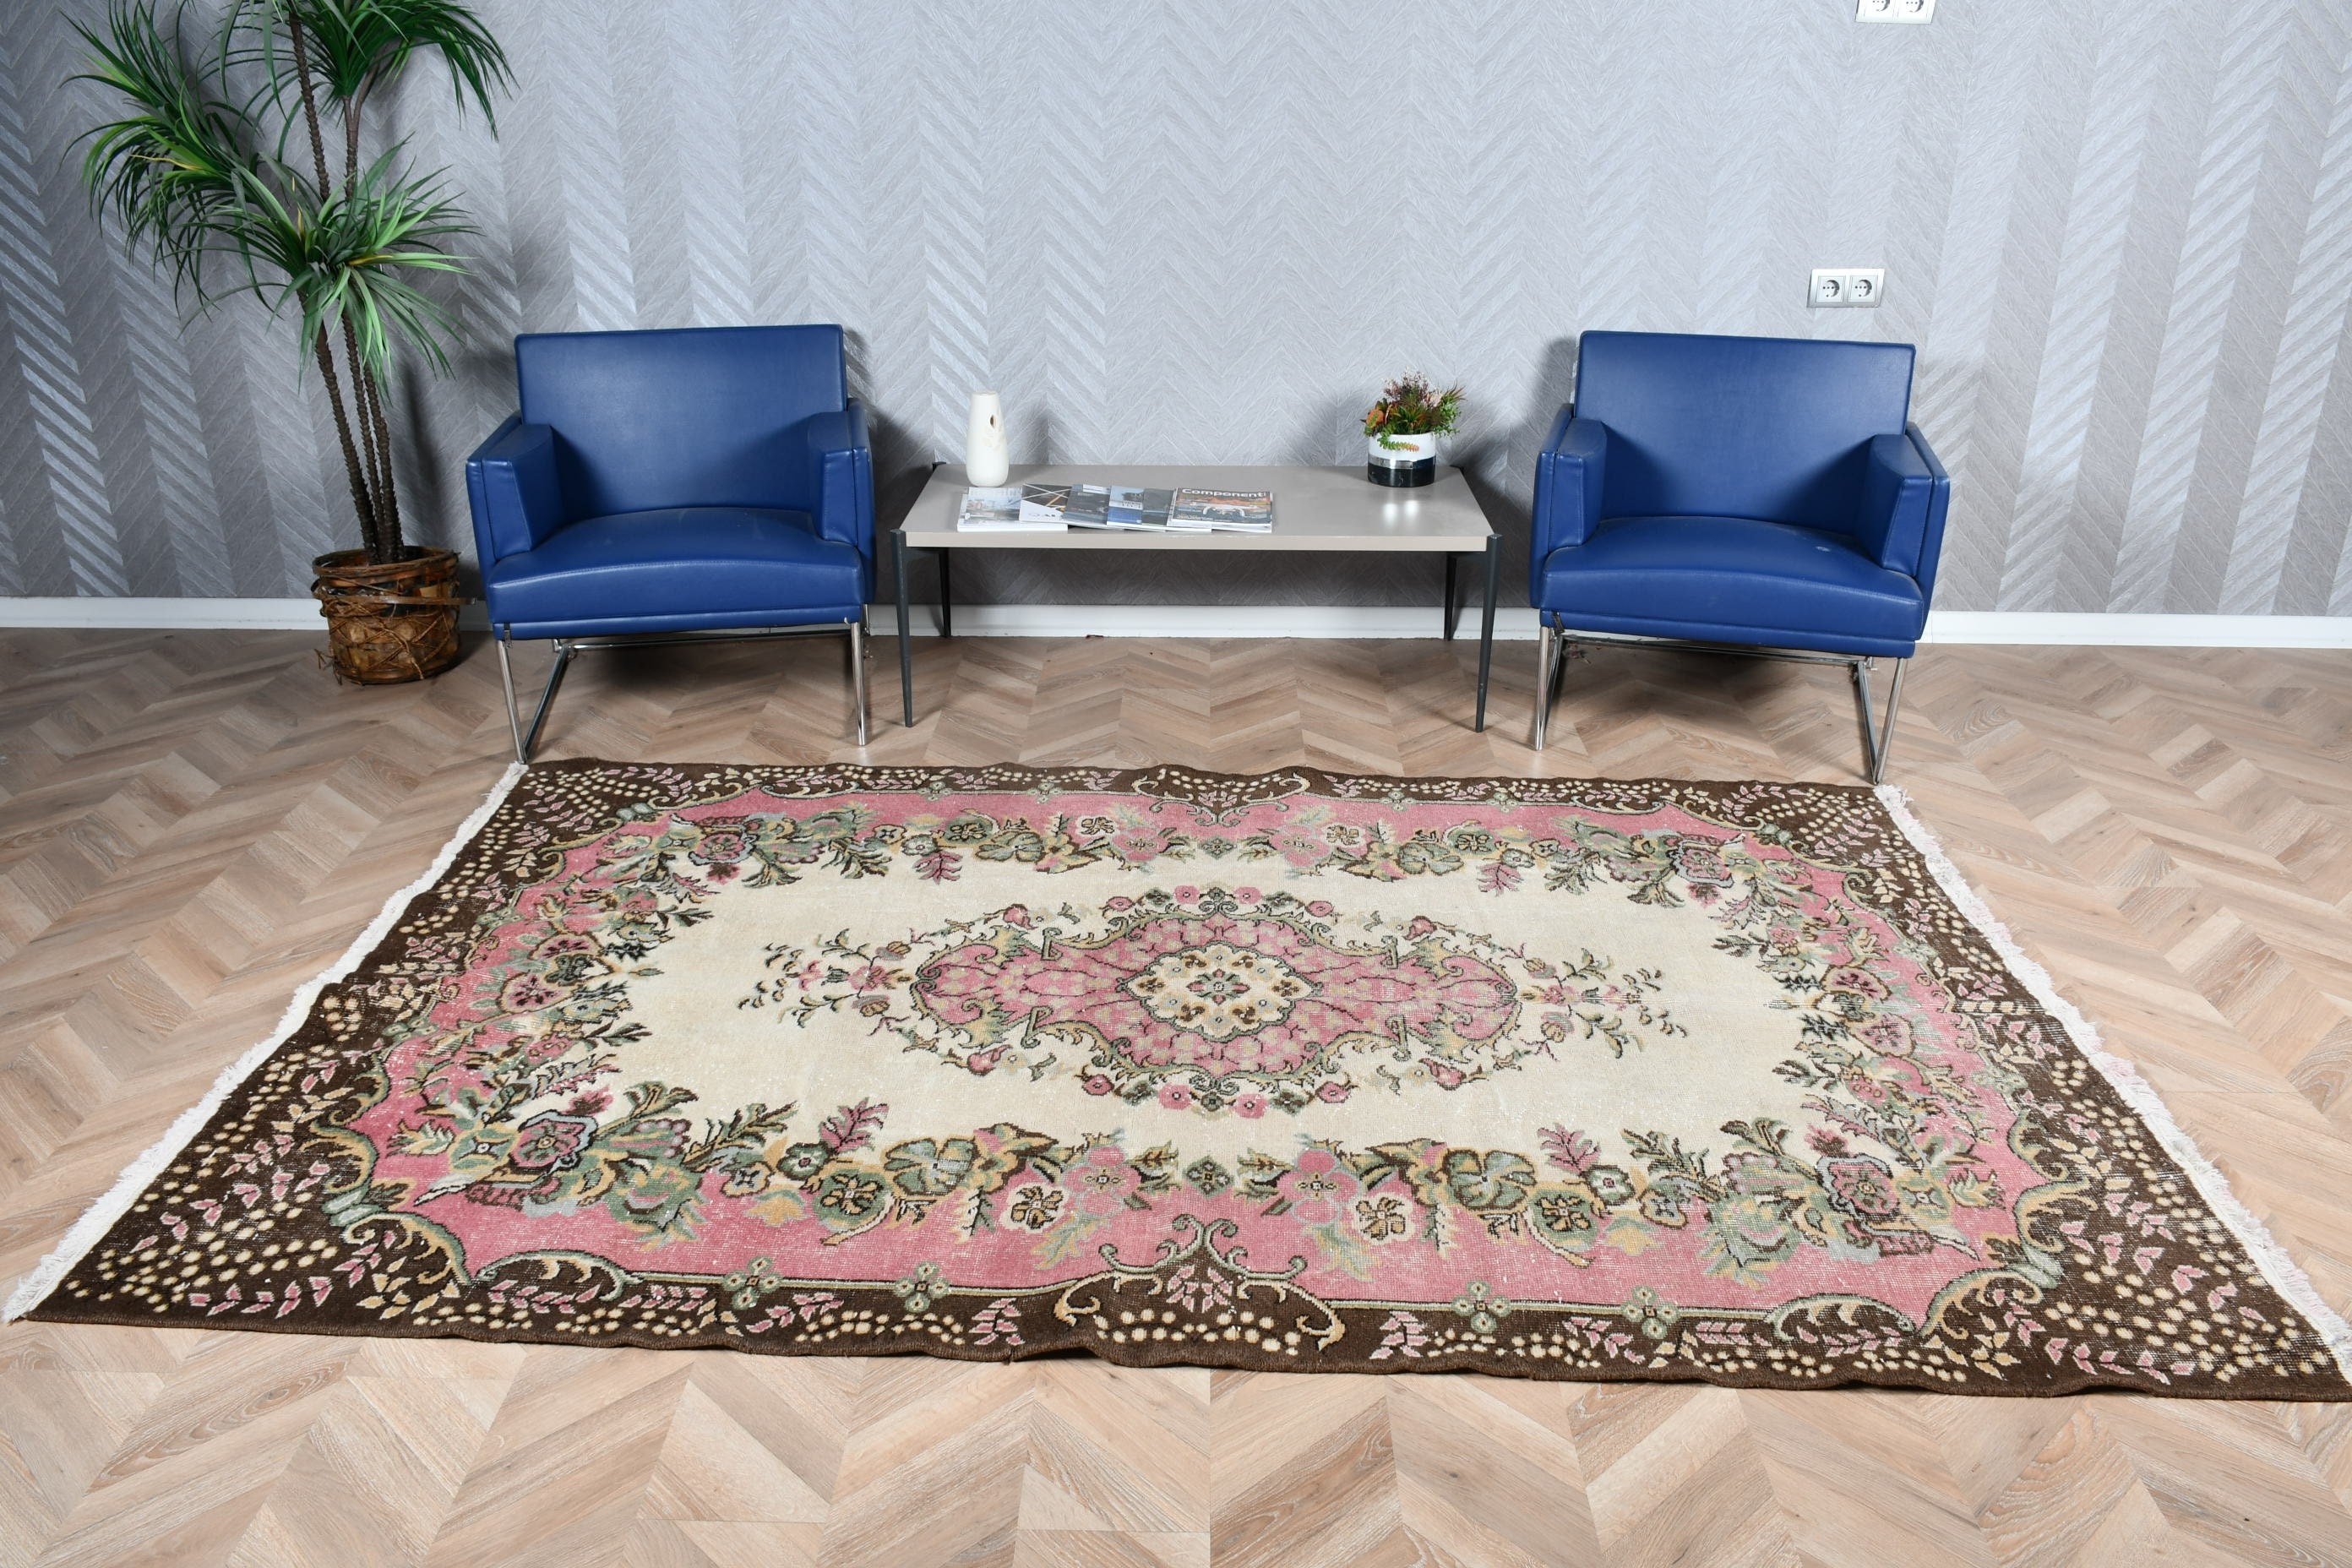 5.6x8.6 ft Large Rug, Turkish Rugs, Vintage Rug, Living Room Rugs, Brown Bedroom Rugs, Anatolian Rug, Dining Room Rugs, Oushak Rug, Old Rug